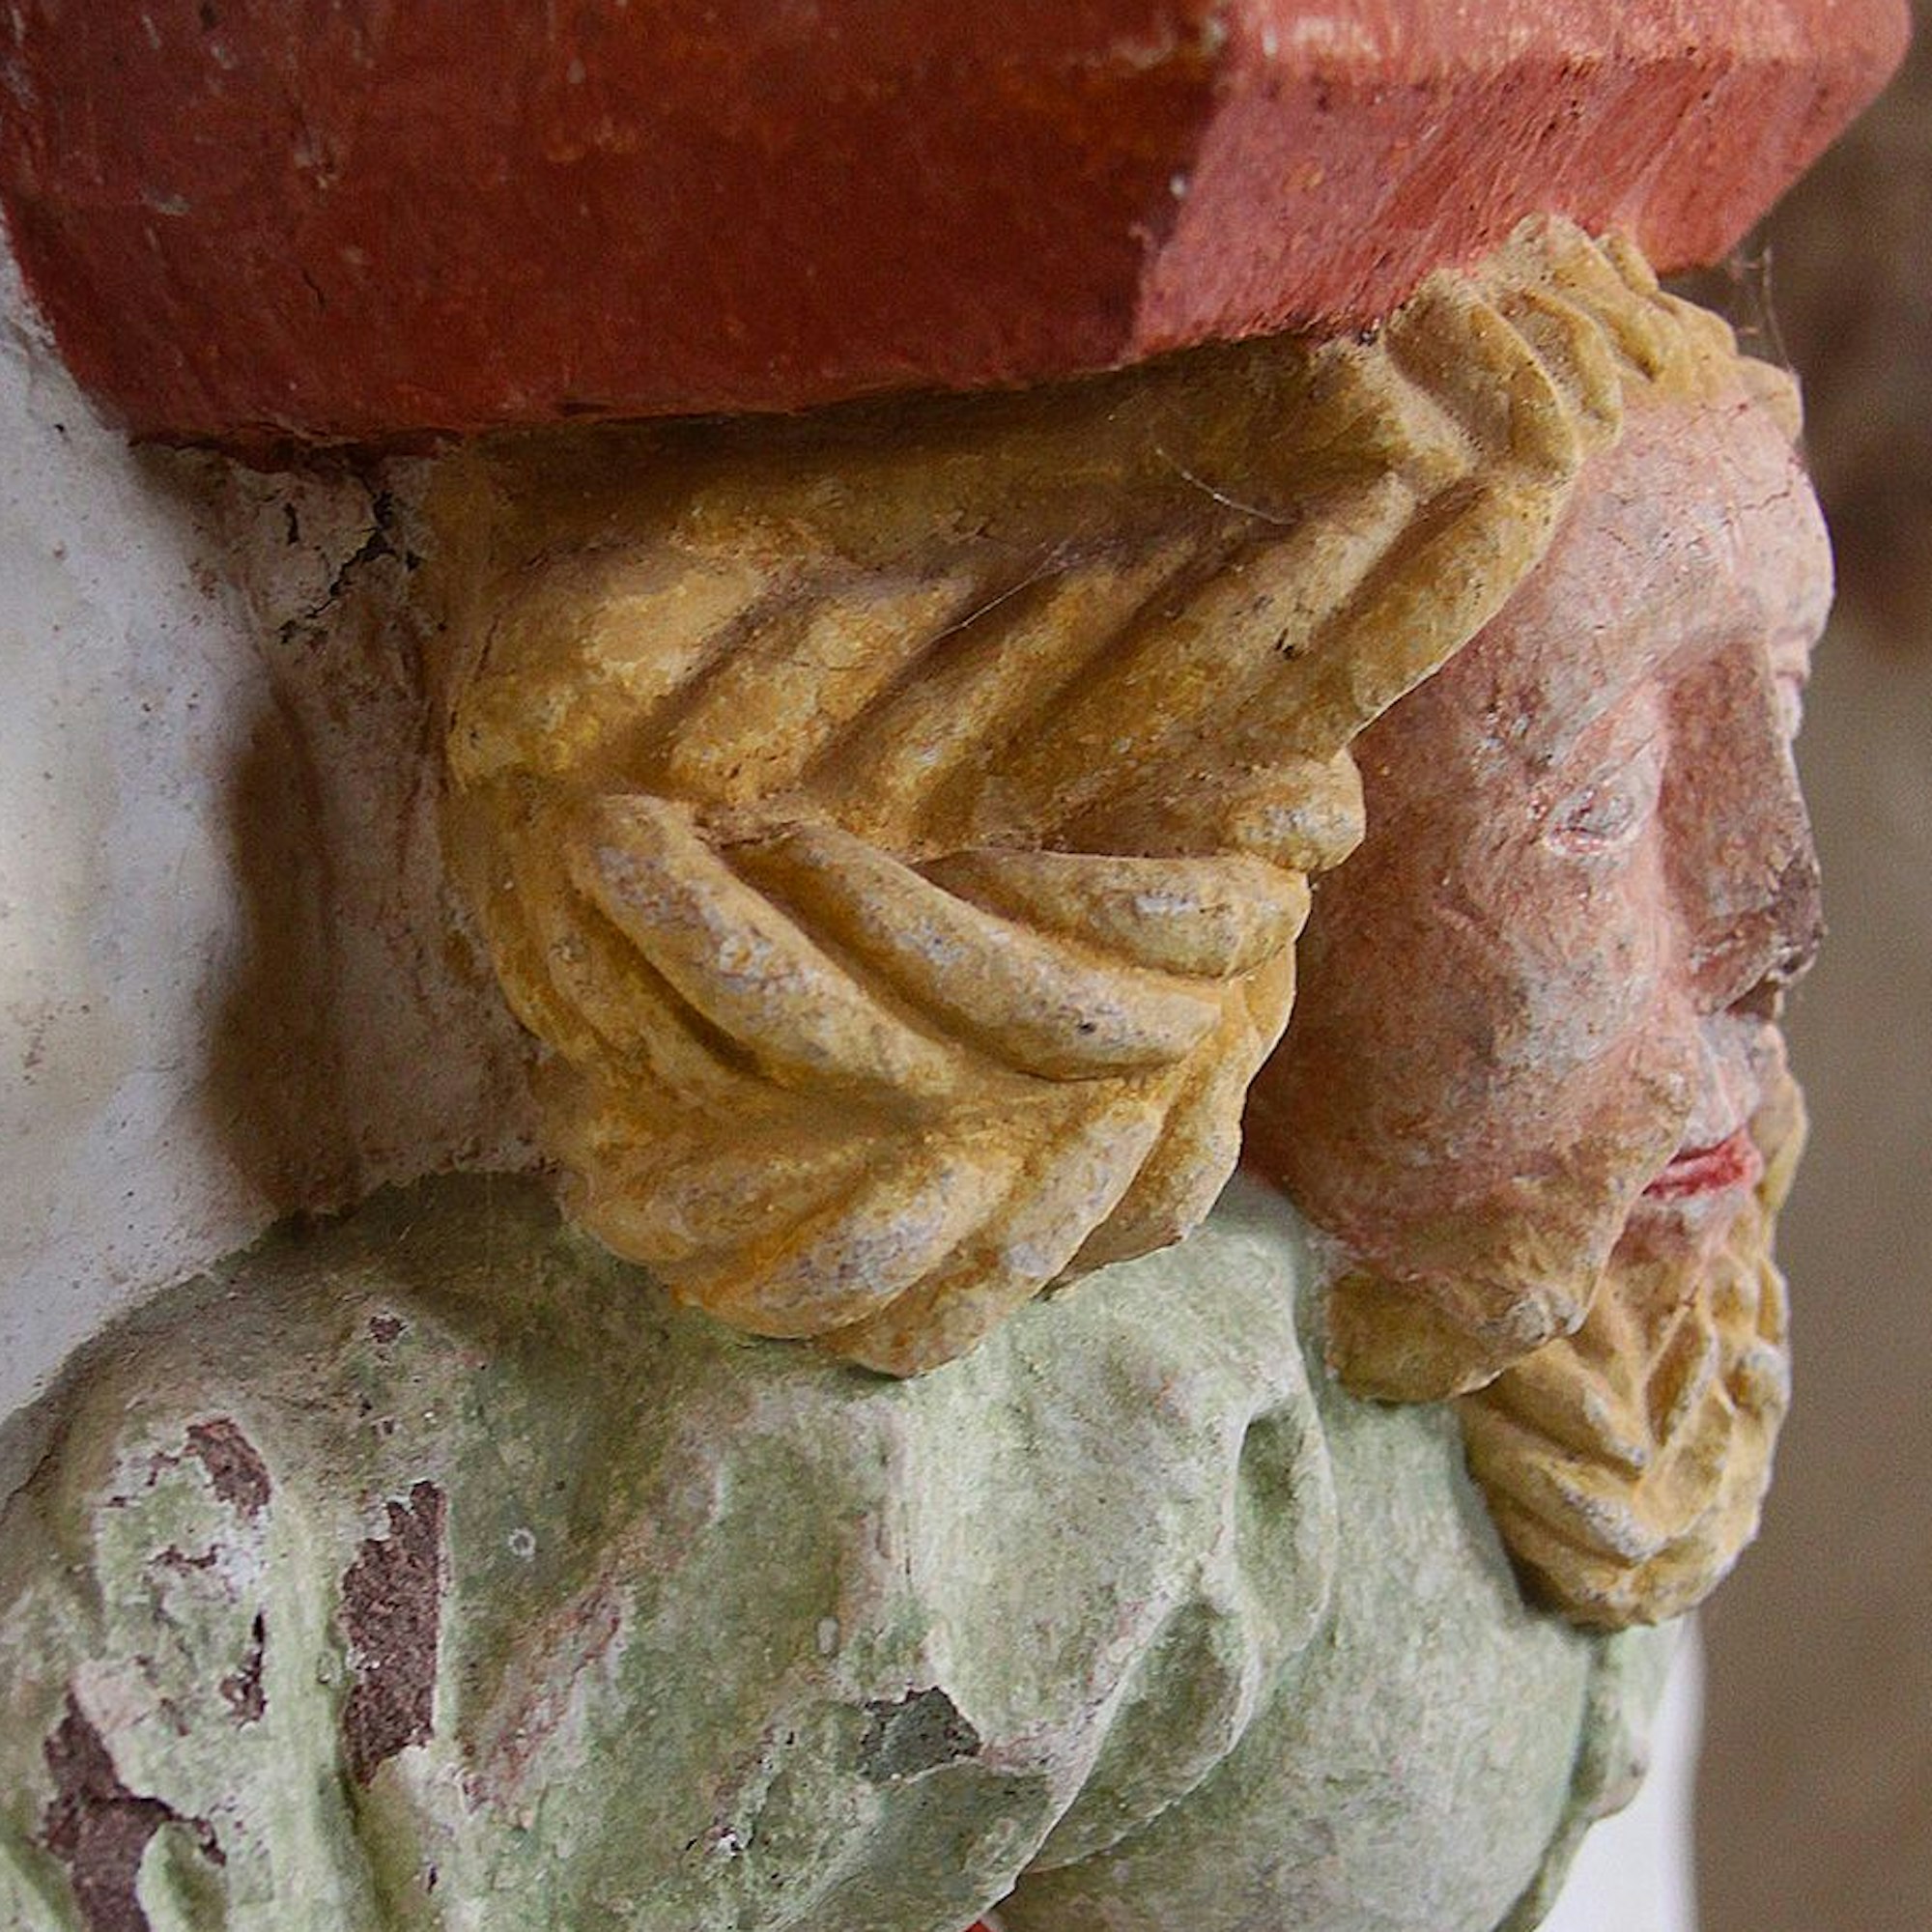 Das Bild zeigt den Pfeilerbündelträger. Die dargestellte Person hat gelbe Haare, ein rosafarbenes Gesicht und grüne Kleidung.